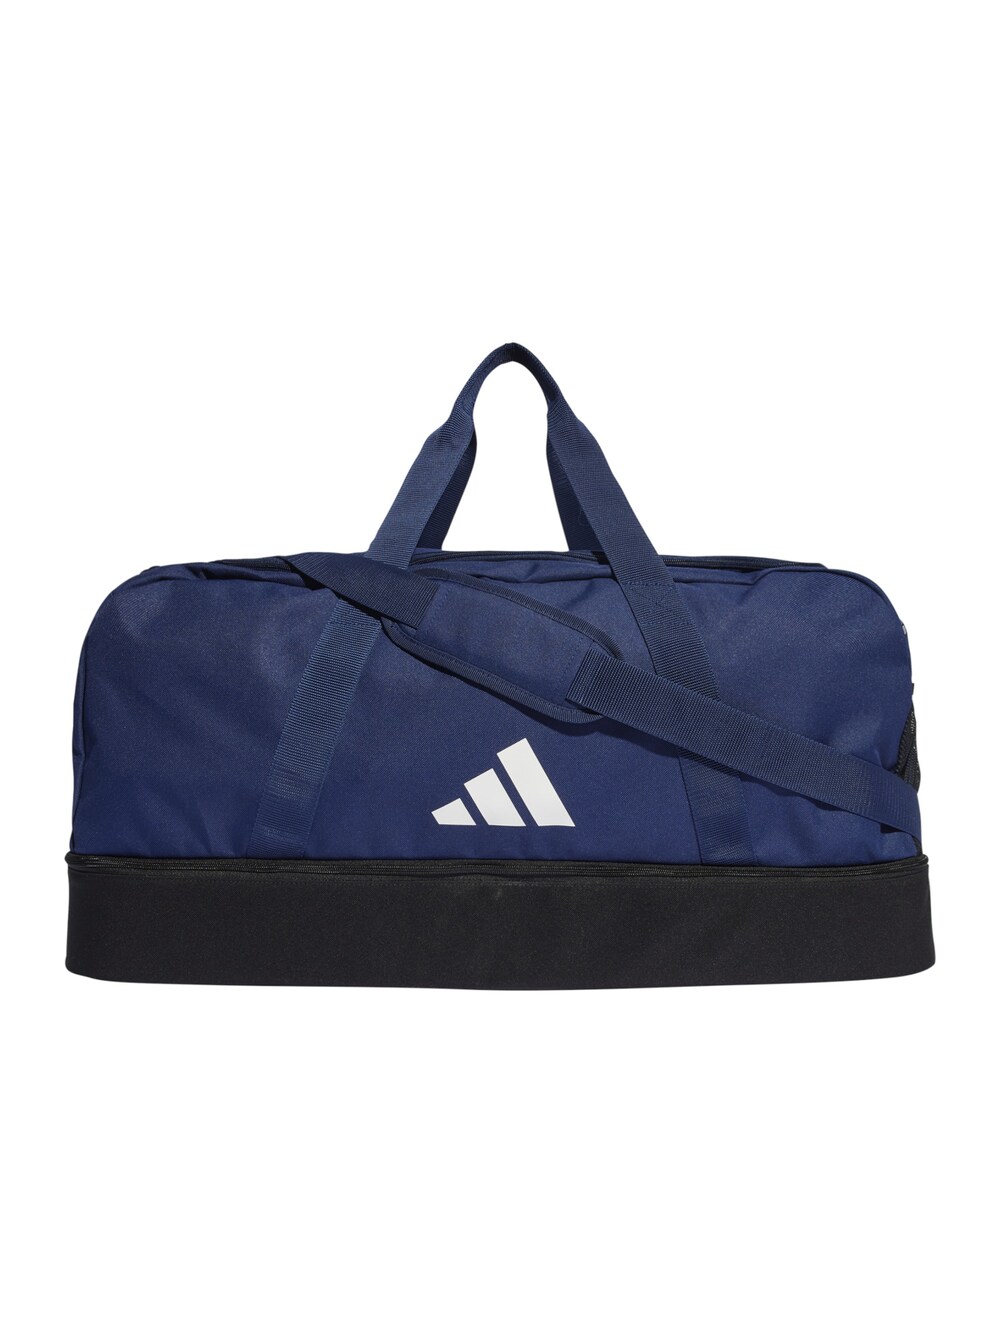 Спортивная сумка ADIDAS PERFORMANCE Tiro, темно-синий